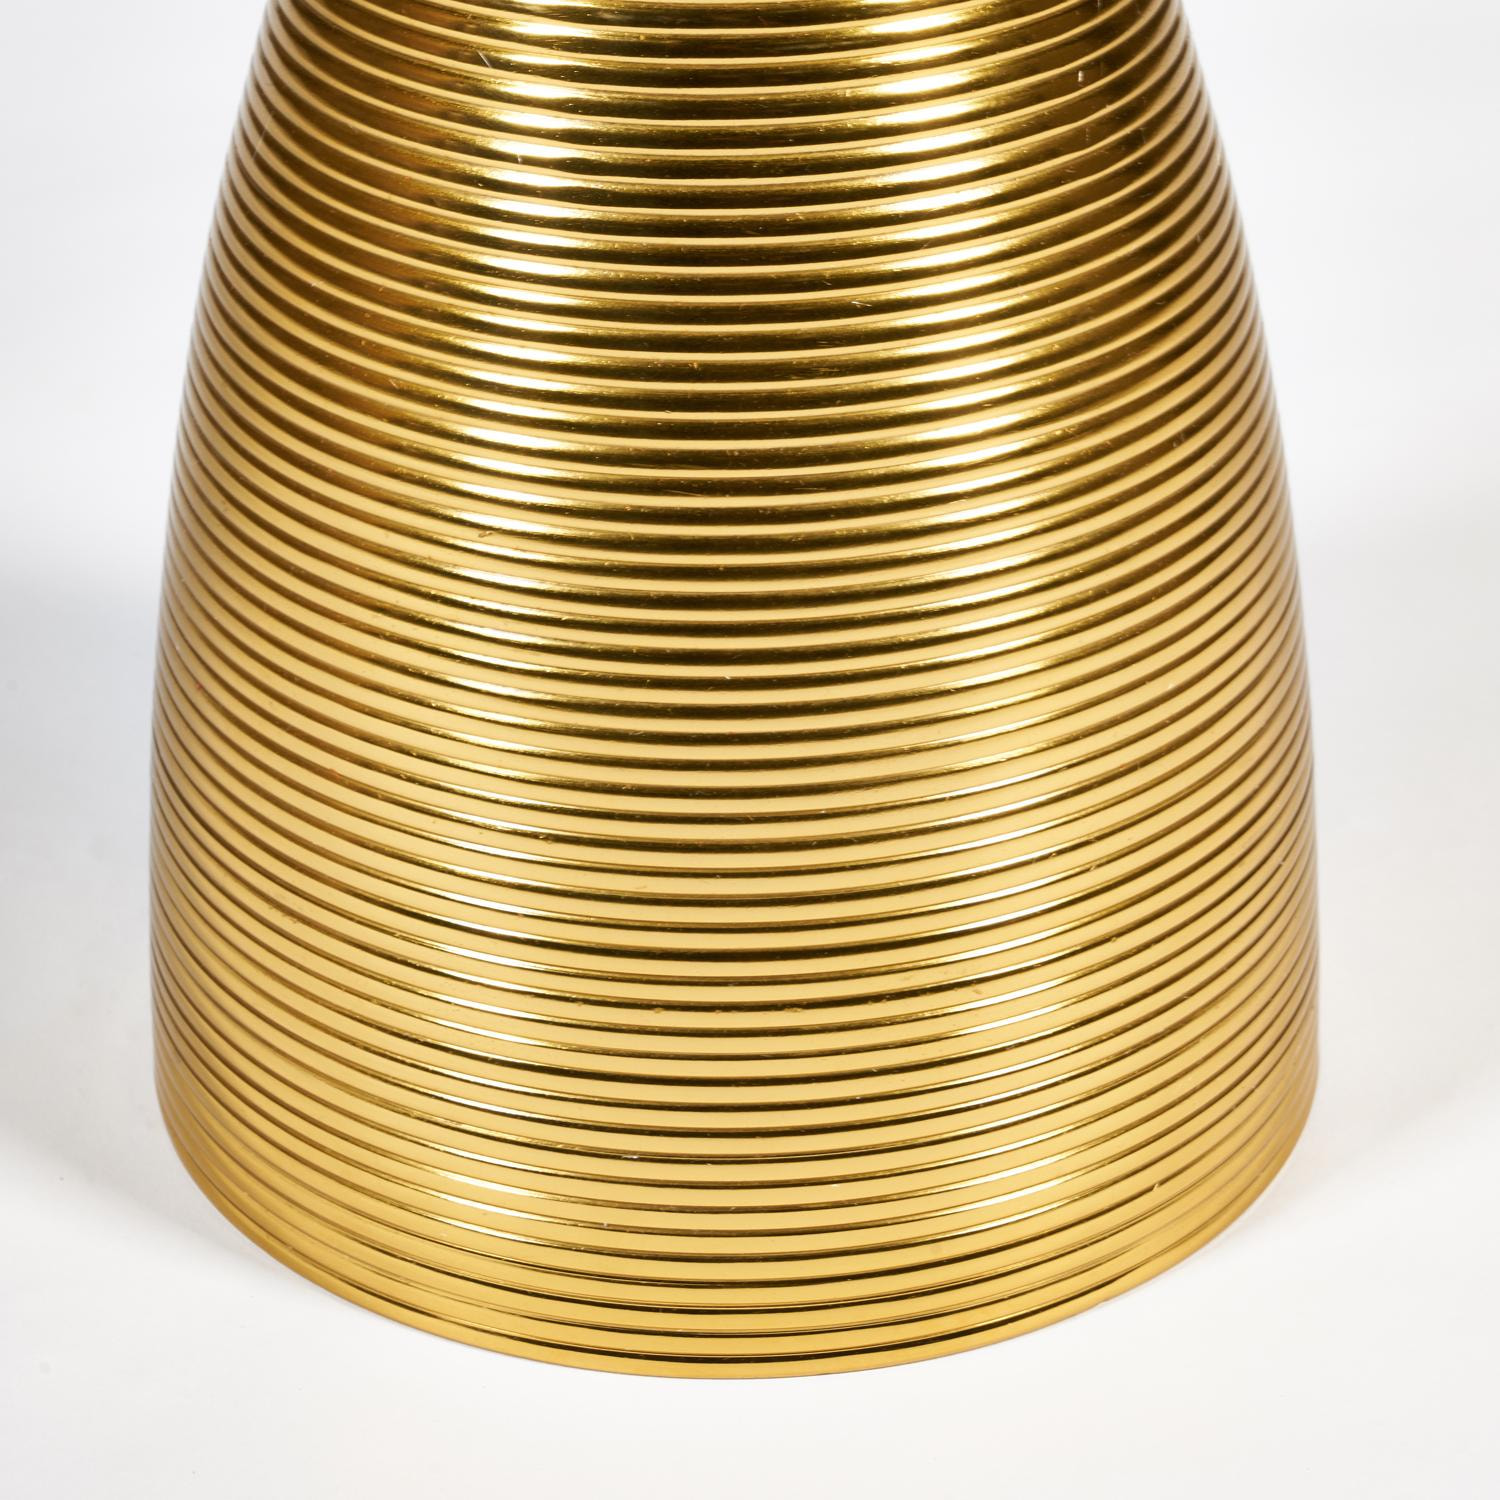 Столик кофейный Secret De Maison CINTRA ( mod. 12473 ) алюминиевый сплав/мрамор, 40,7x40,7x52,7см, золотой/gold